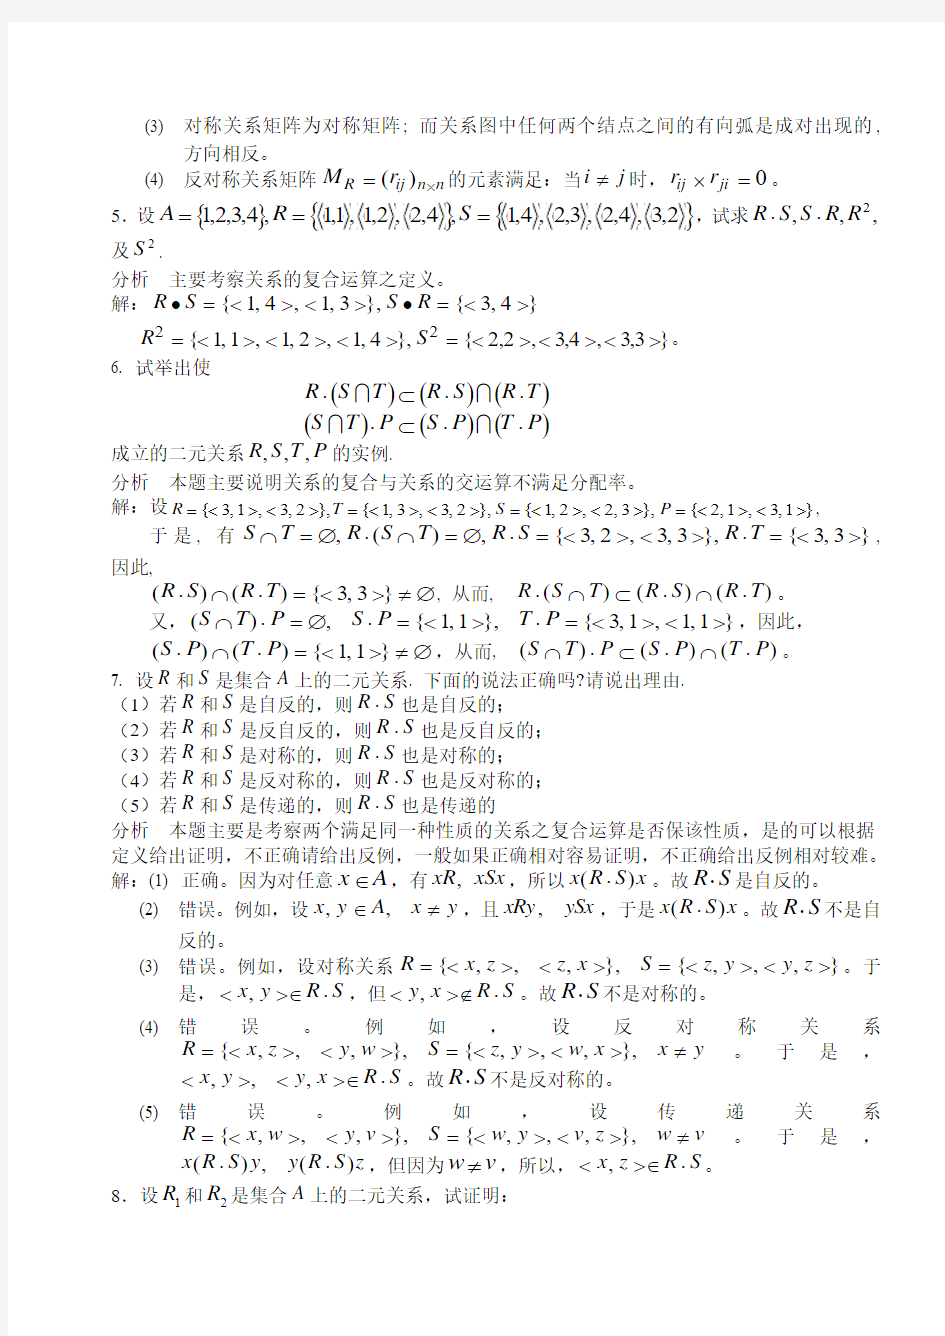 湘潭大学 刘任任版 离散数学课后习题答案 习题2